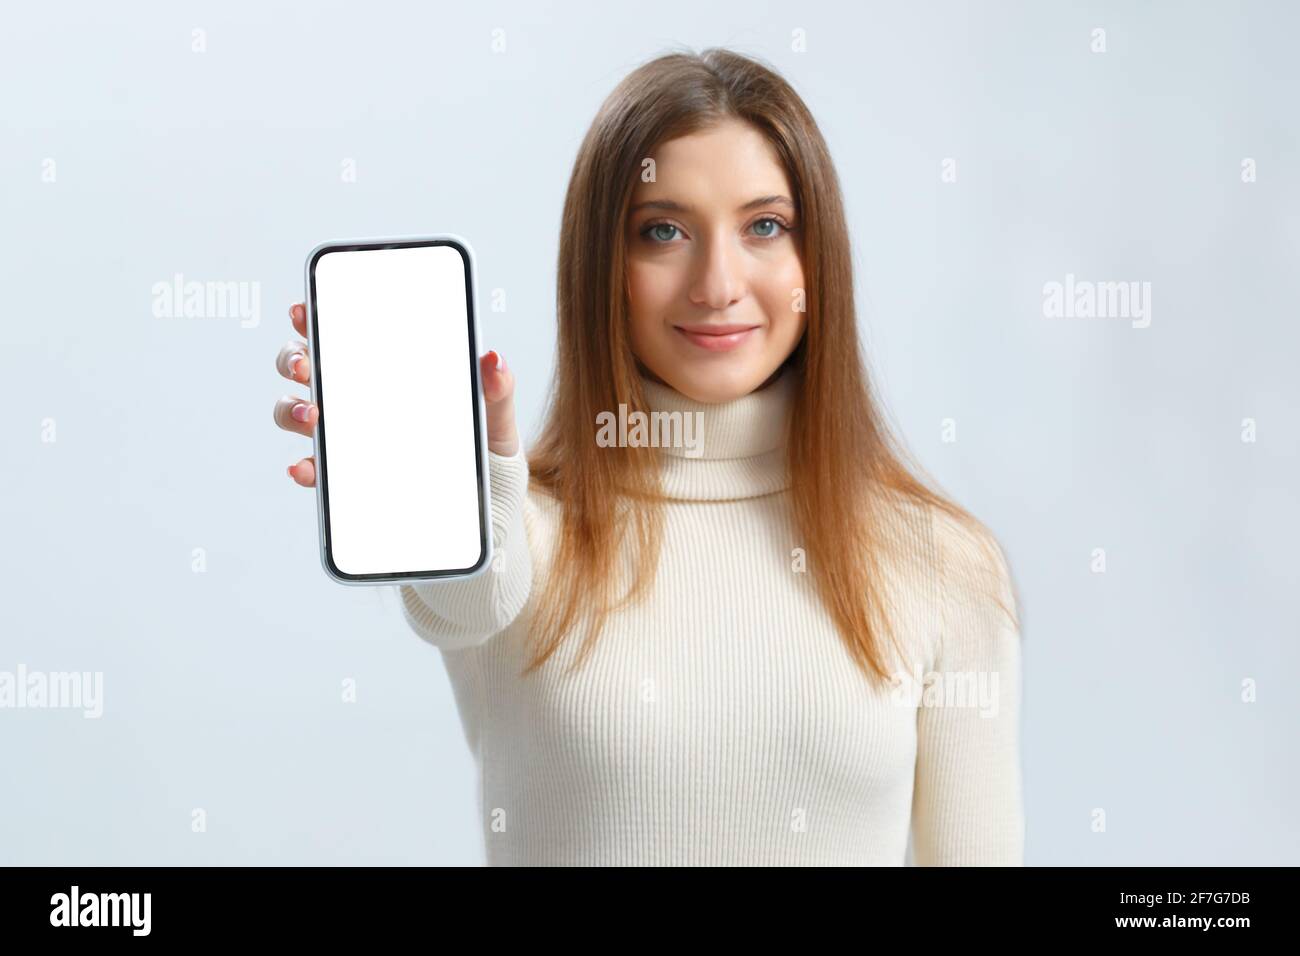 Lächelnde junge Frau zeigt Smartphone mit weißem Touchscreen-Mockup. Schöne braune haarige Mädchen auf einem grauen Hintergrund. Stockfoto